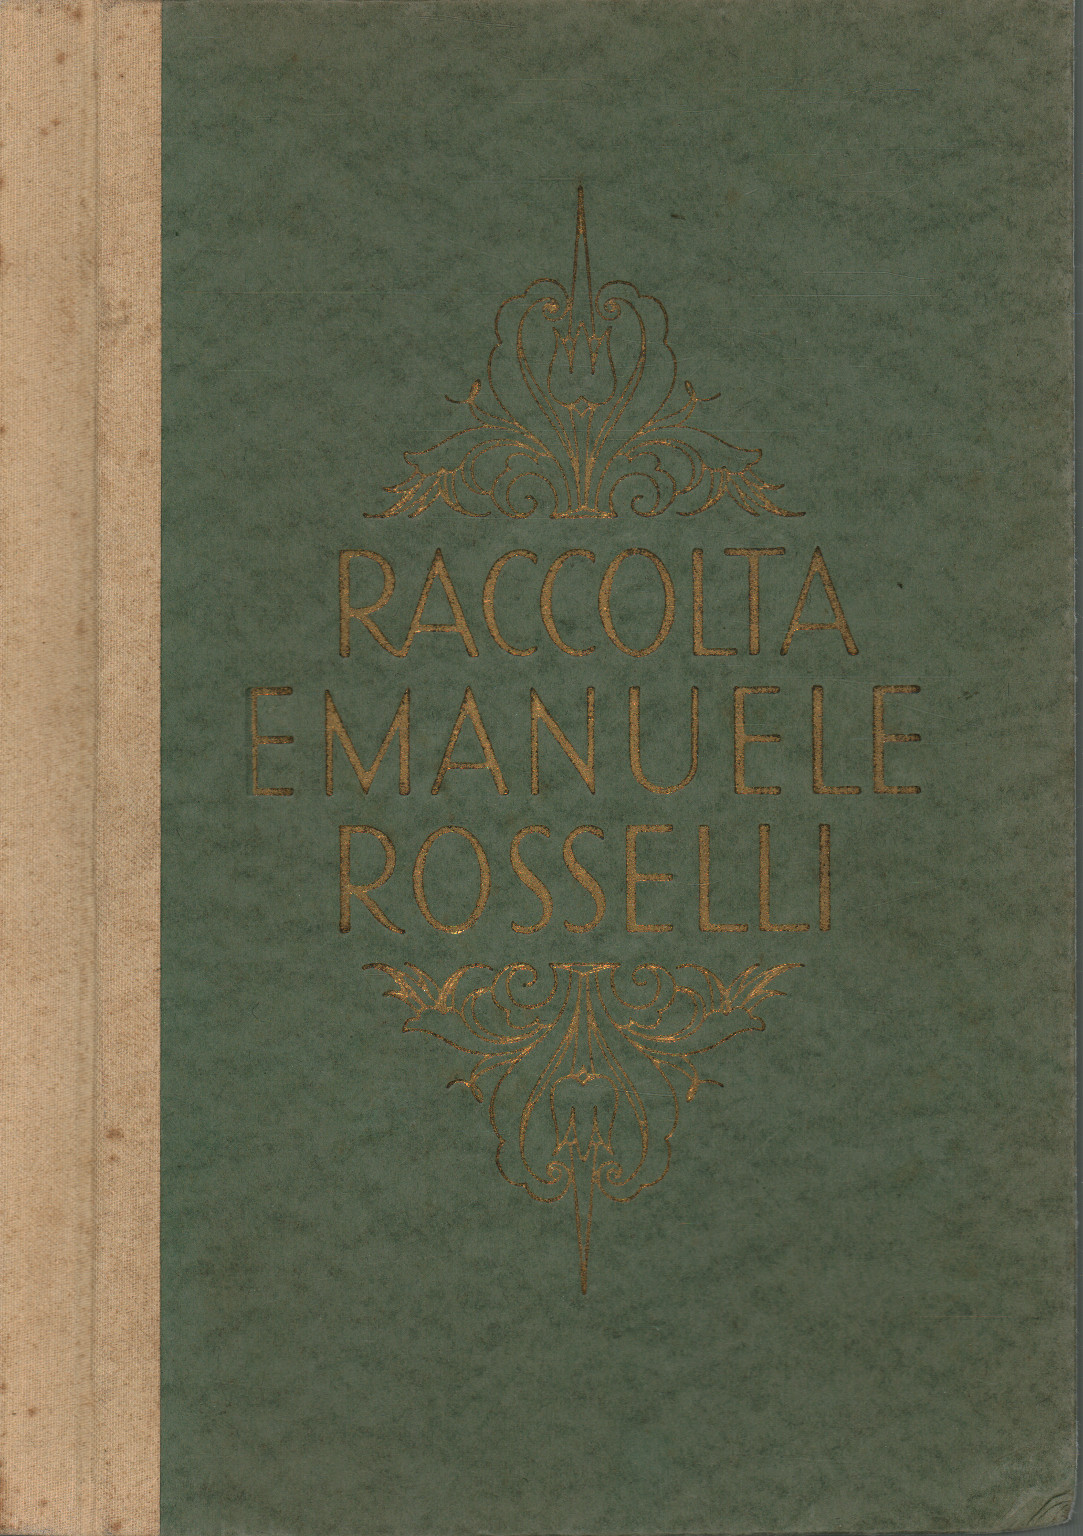 Collection Emanuele Rosselli di Viareggio, s.un.